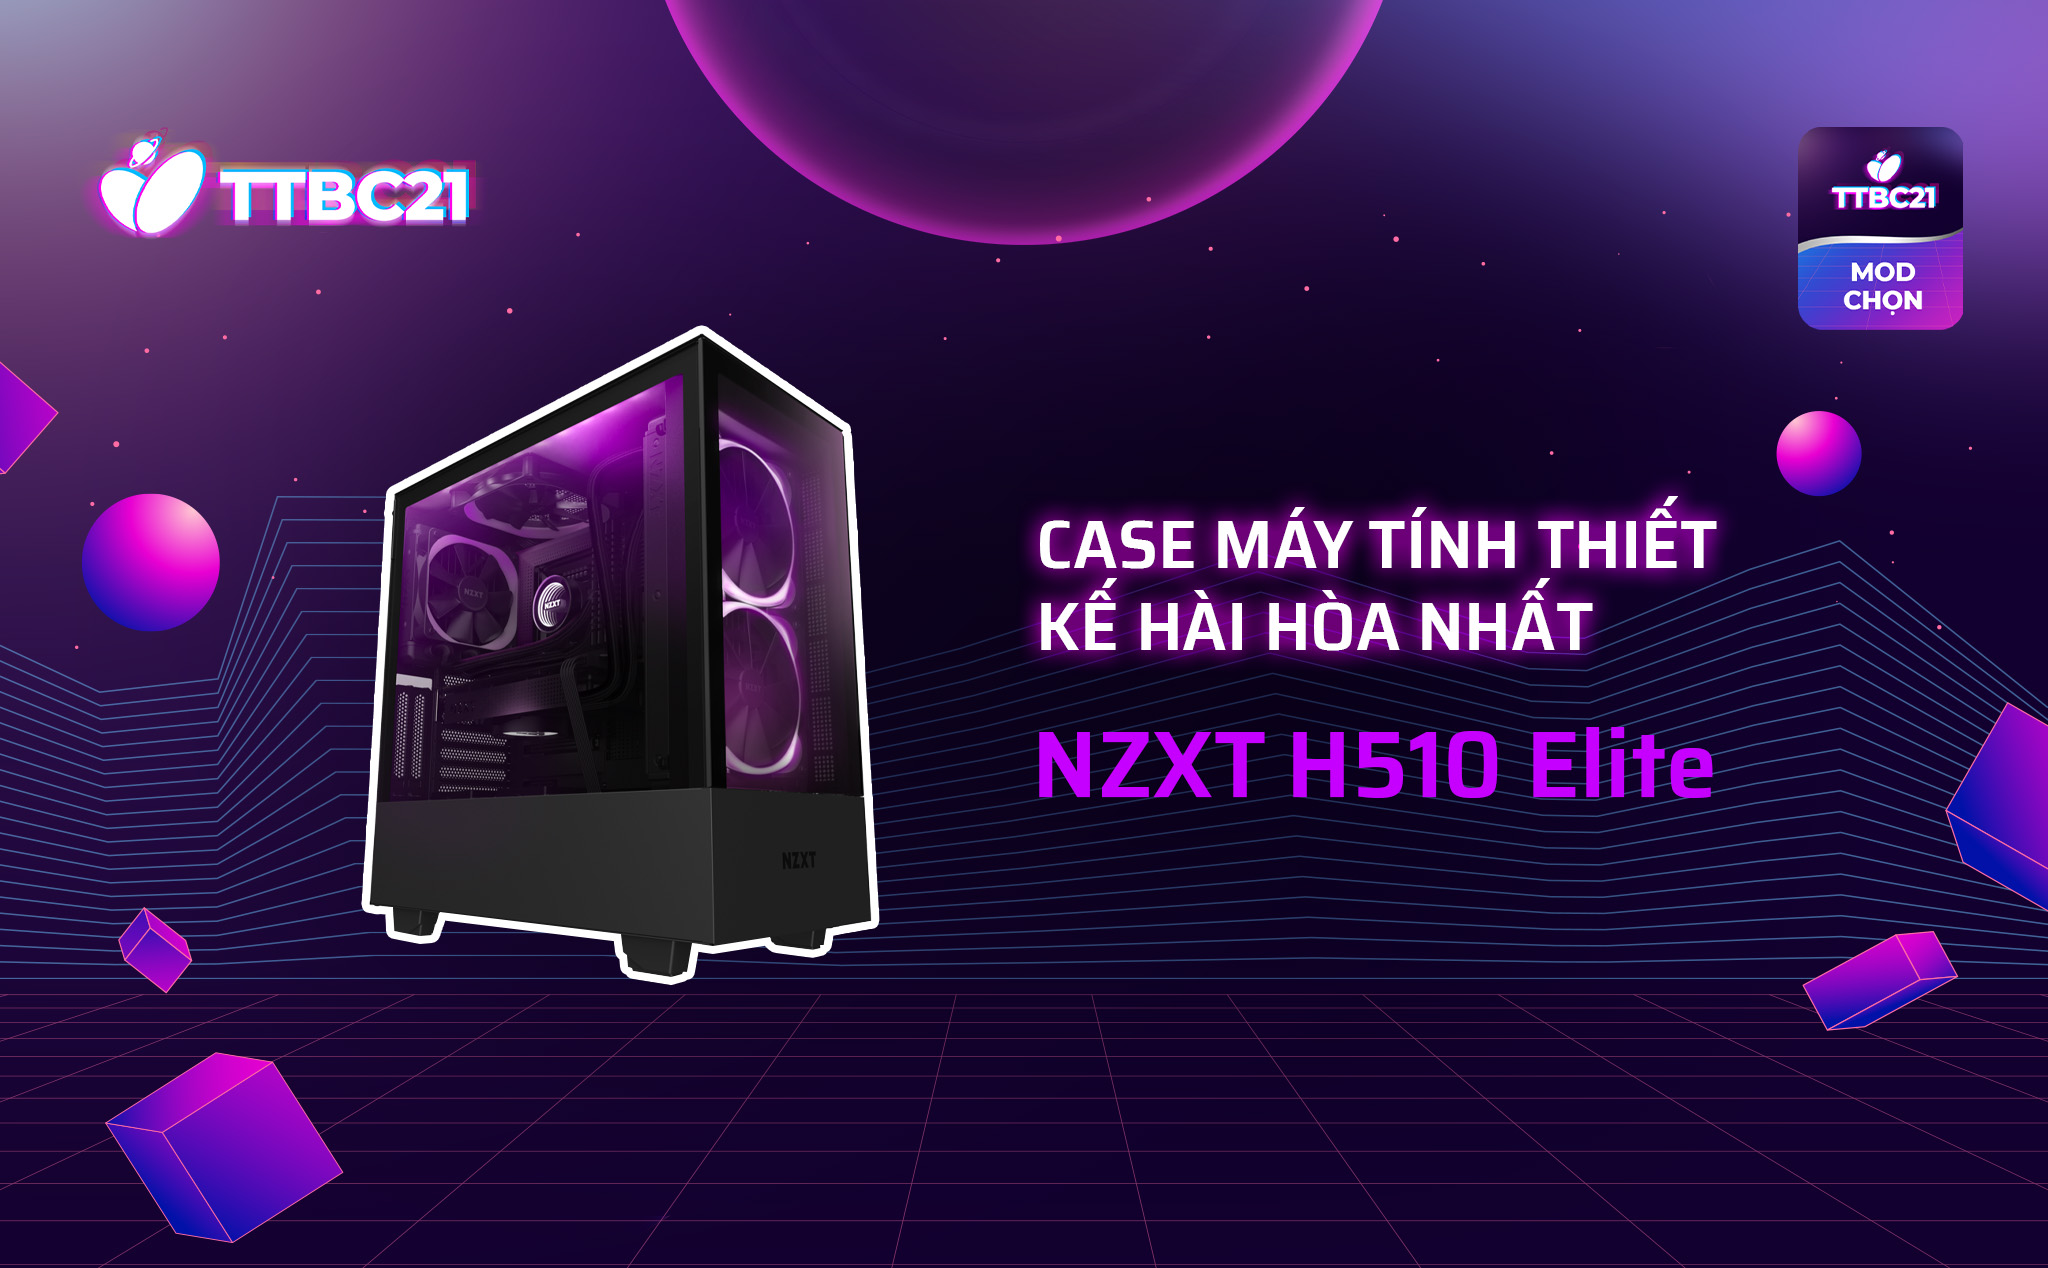 #TTBC21 – Mod Choice: Case máy tính thiết kế hài hòa nhất: NZXT H510 Elite